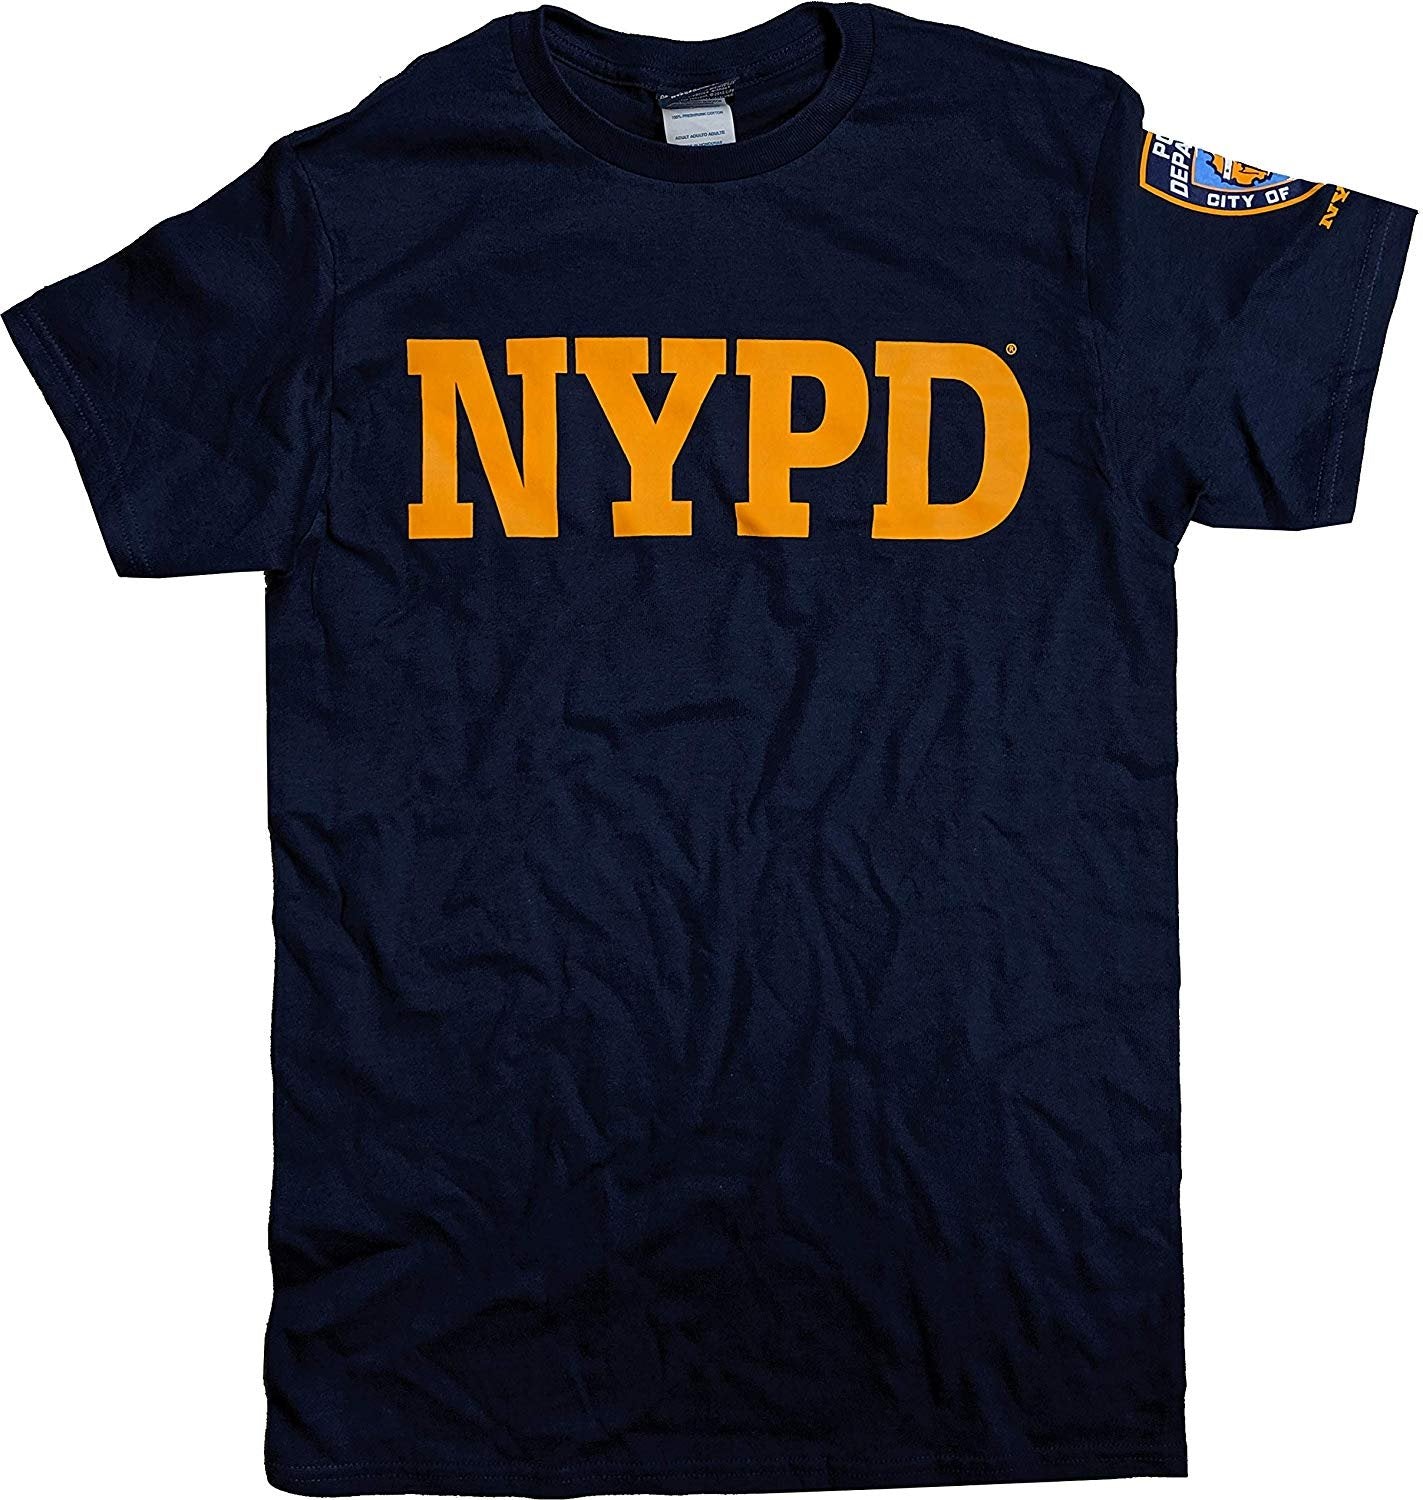 T-shirt NYPD pour hommes (imprimé sur le devant et sur les manches, bleu marine / or)